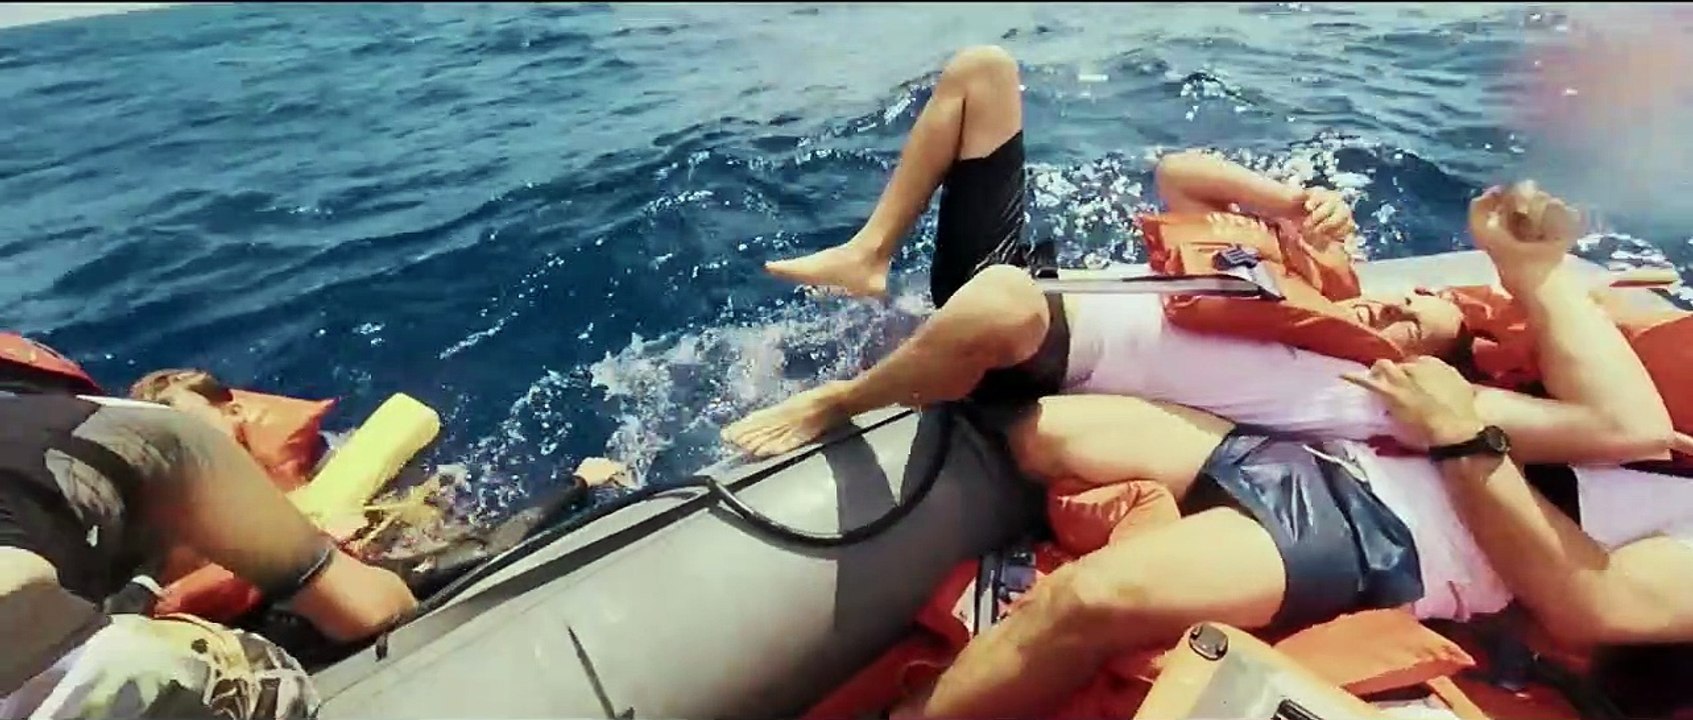 Iuventa. Seenotrettung - Ein Akt der Menschlichkeit Trailer DF